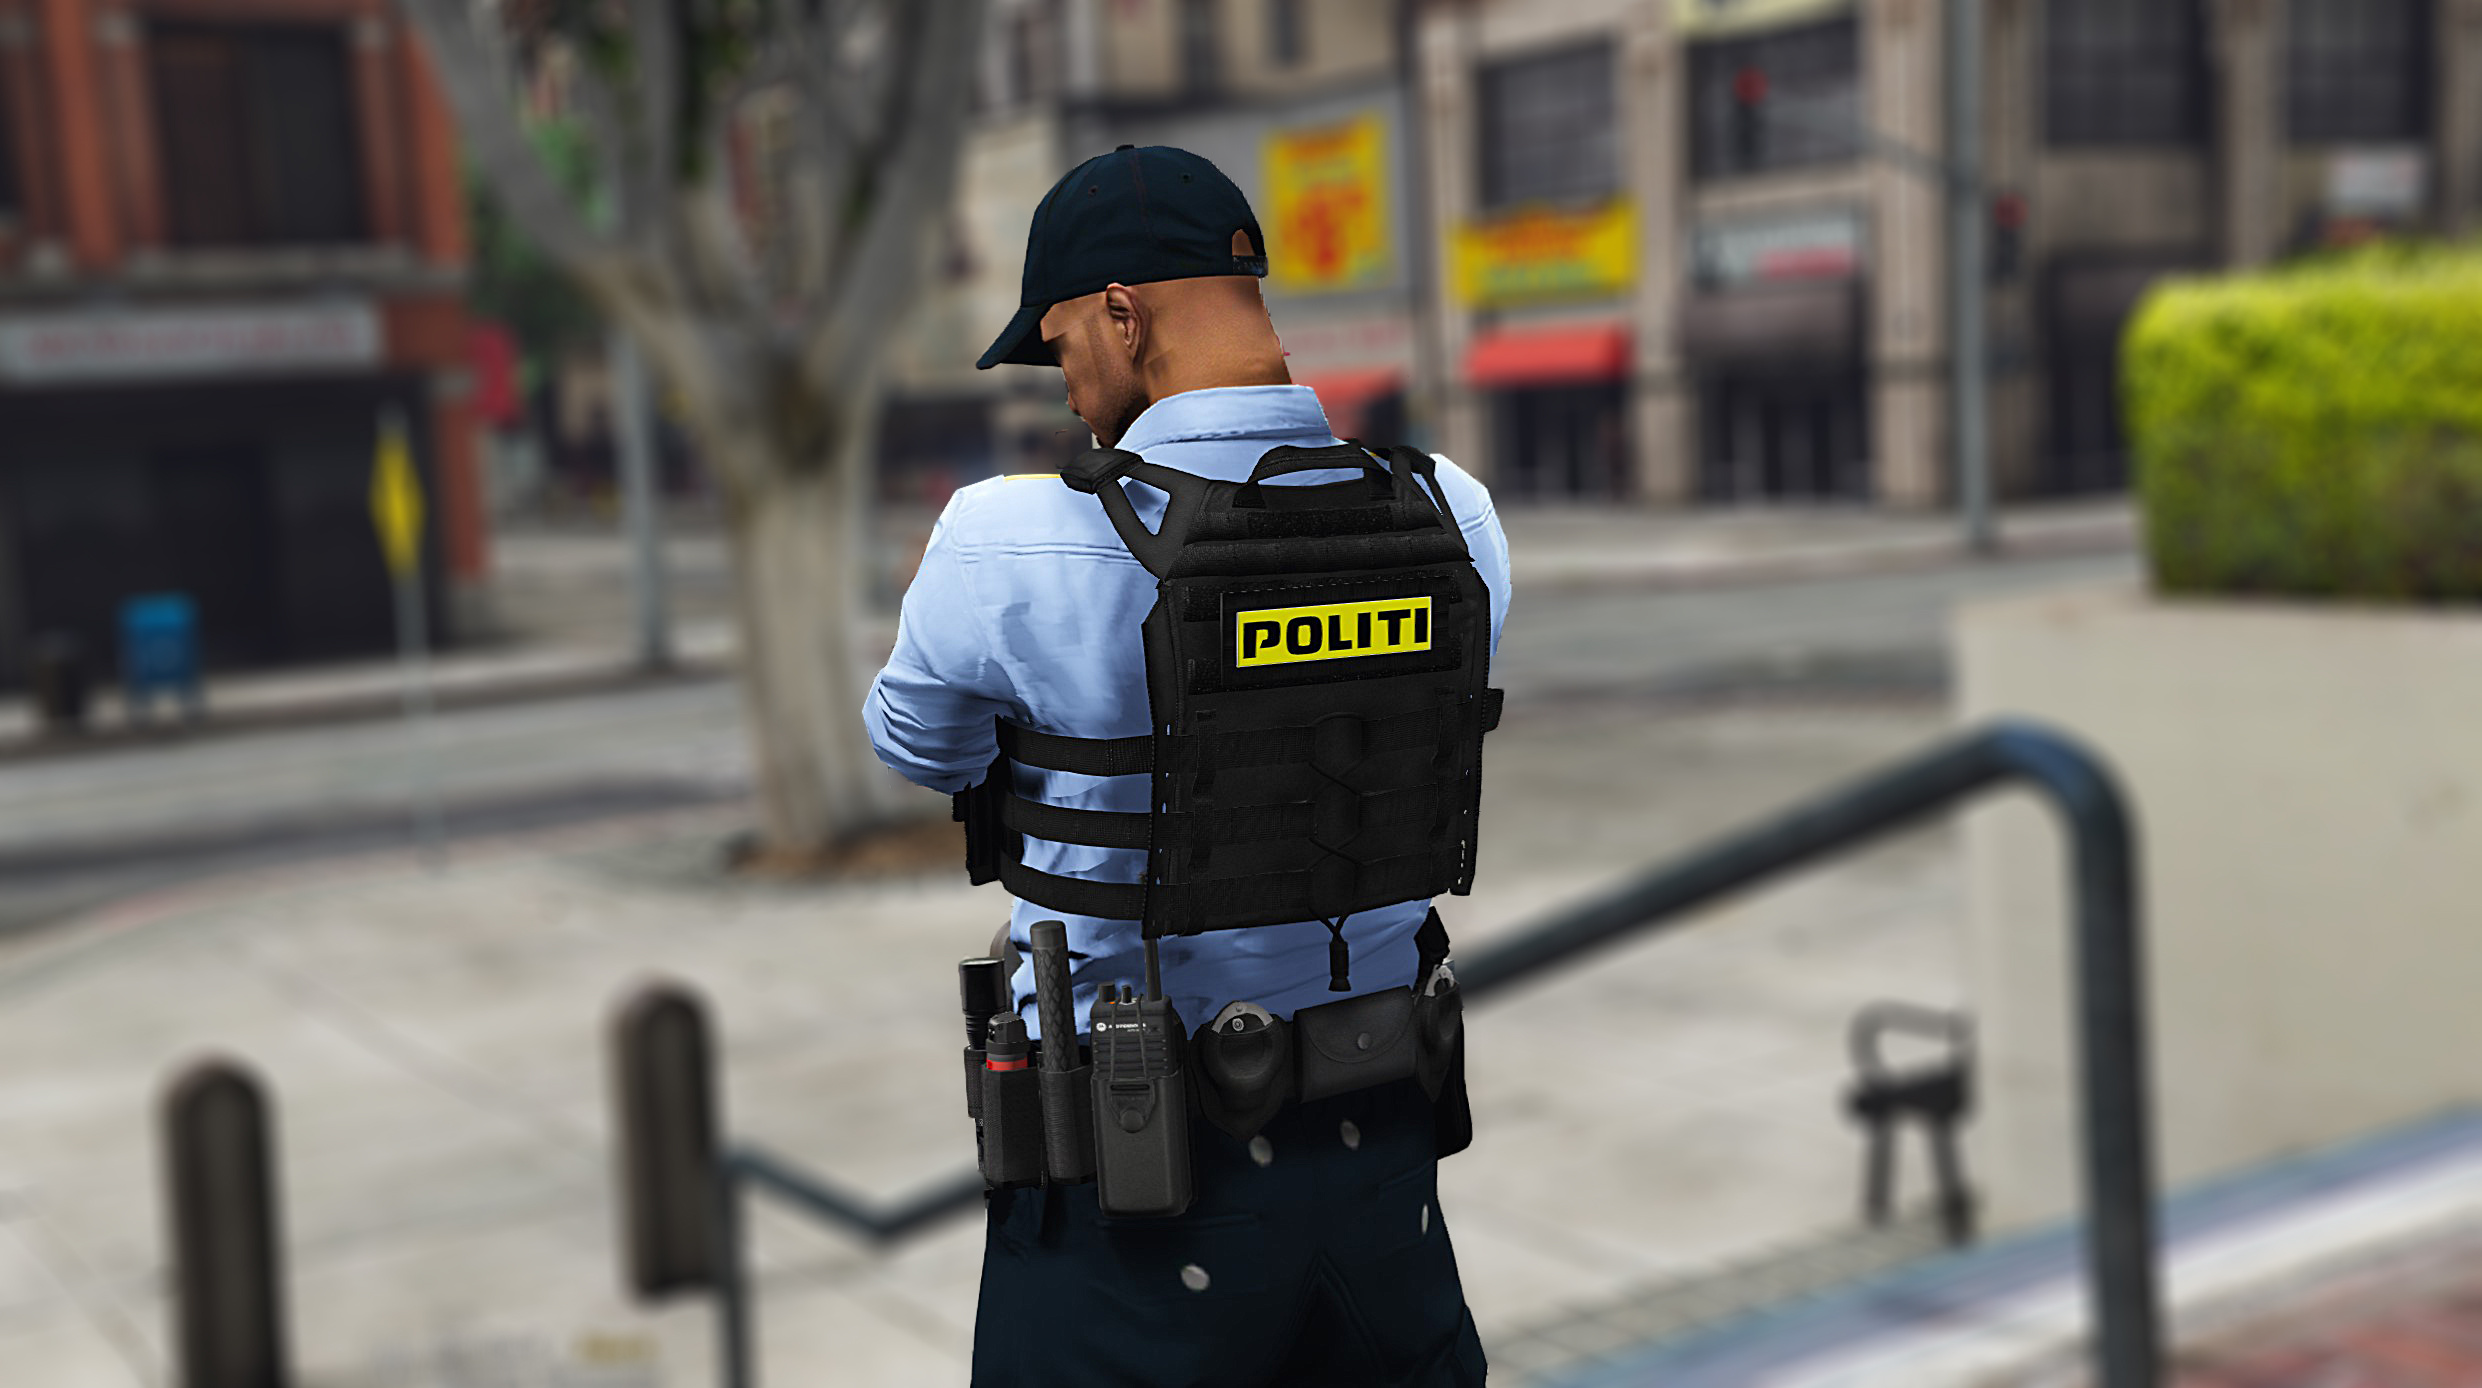 Jpc Police Vest Danish Skin Gta Mods Com